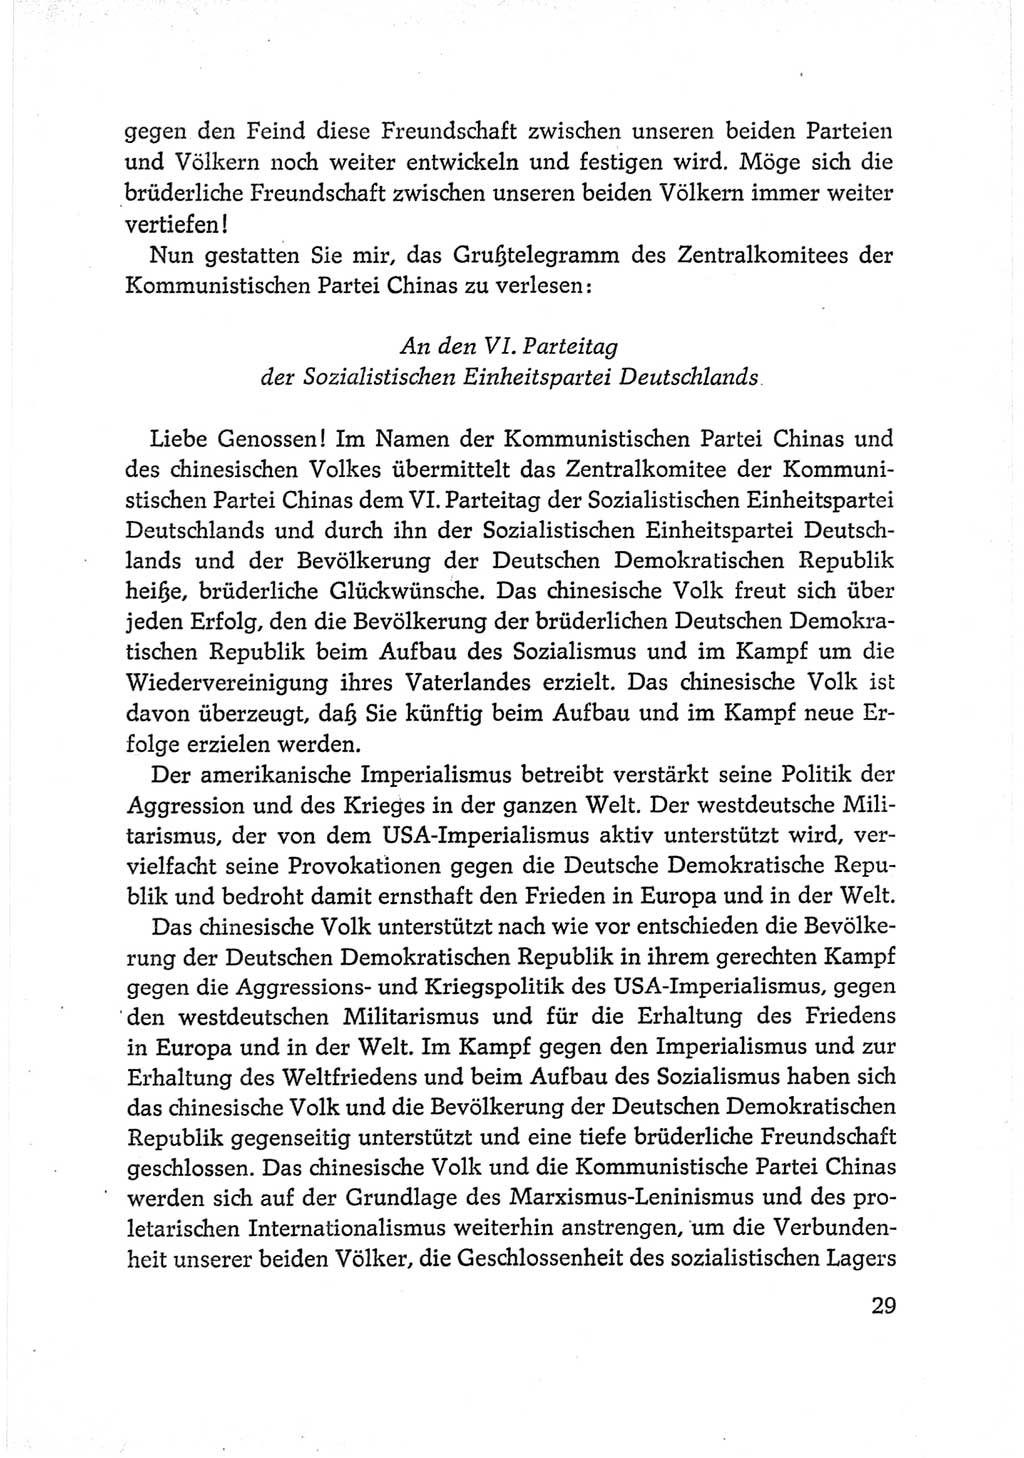 Protokoll der Verhandlungen des Ⅵ. Parteitages der Sozialistischen Einheitspartei Deutschlands (SED) [Deutsche Demokratische Republik (DDR)] 1963, Band Ⅱ, Seite 29 (Prot. Verh. Ⅵ. PT SED DDR 1963, Bd. Ⅱ, S. 29)